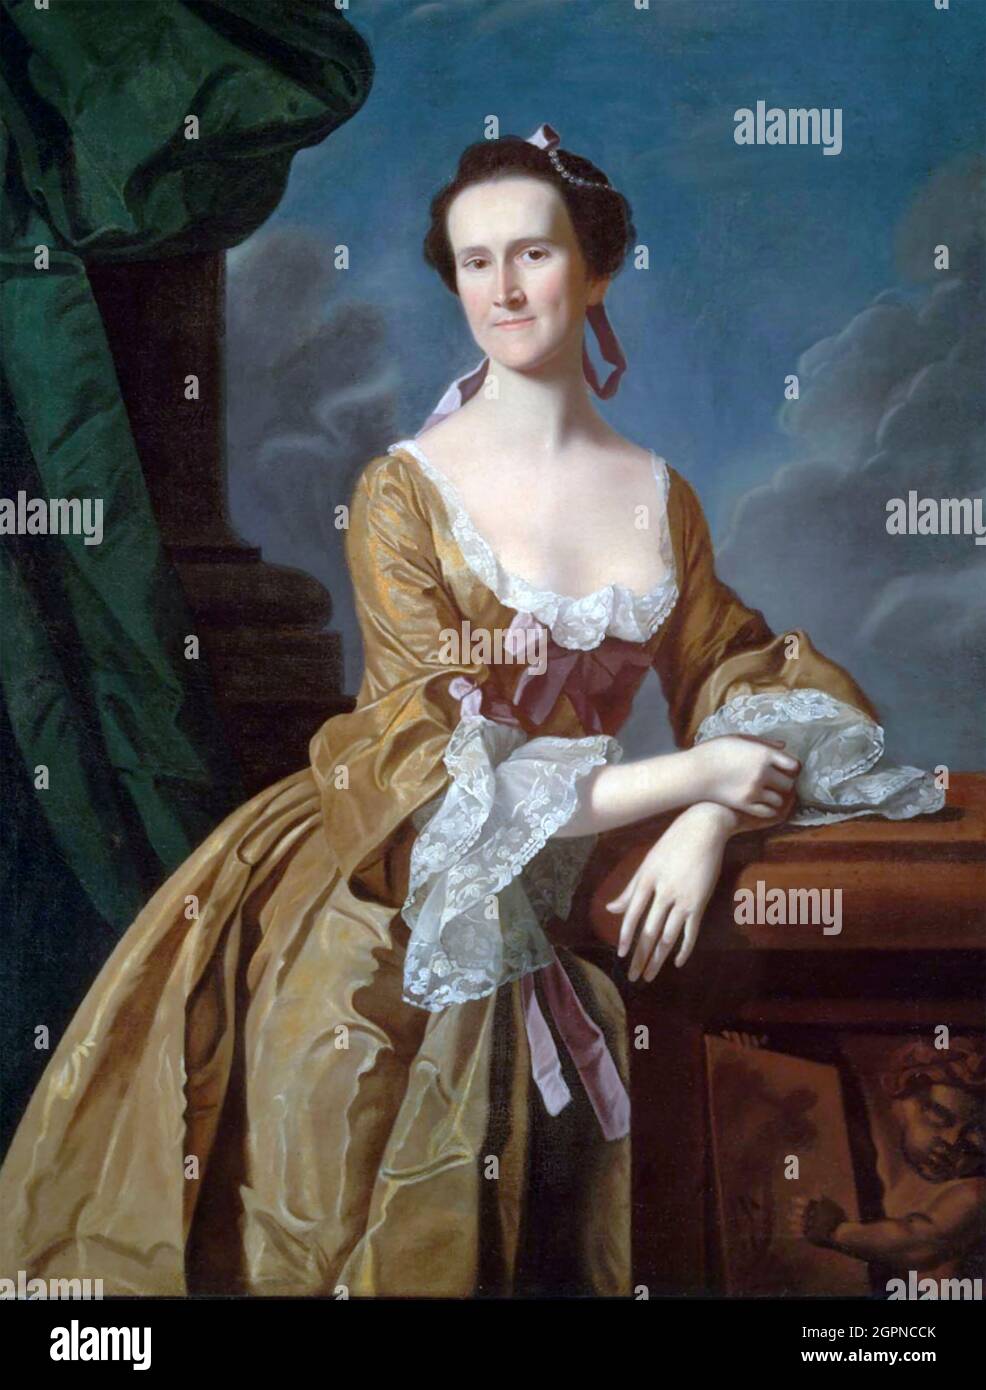 KATHARINE GREENE AMORY (1731-1777) qui a tenu un journal intime pendant la Révolution américaine Banque D'Images